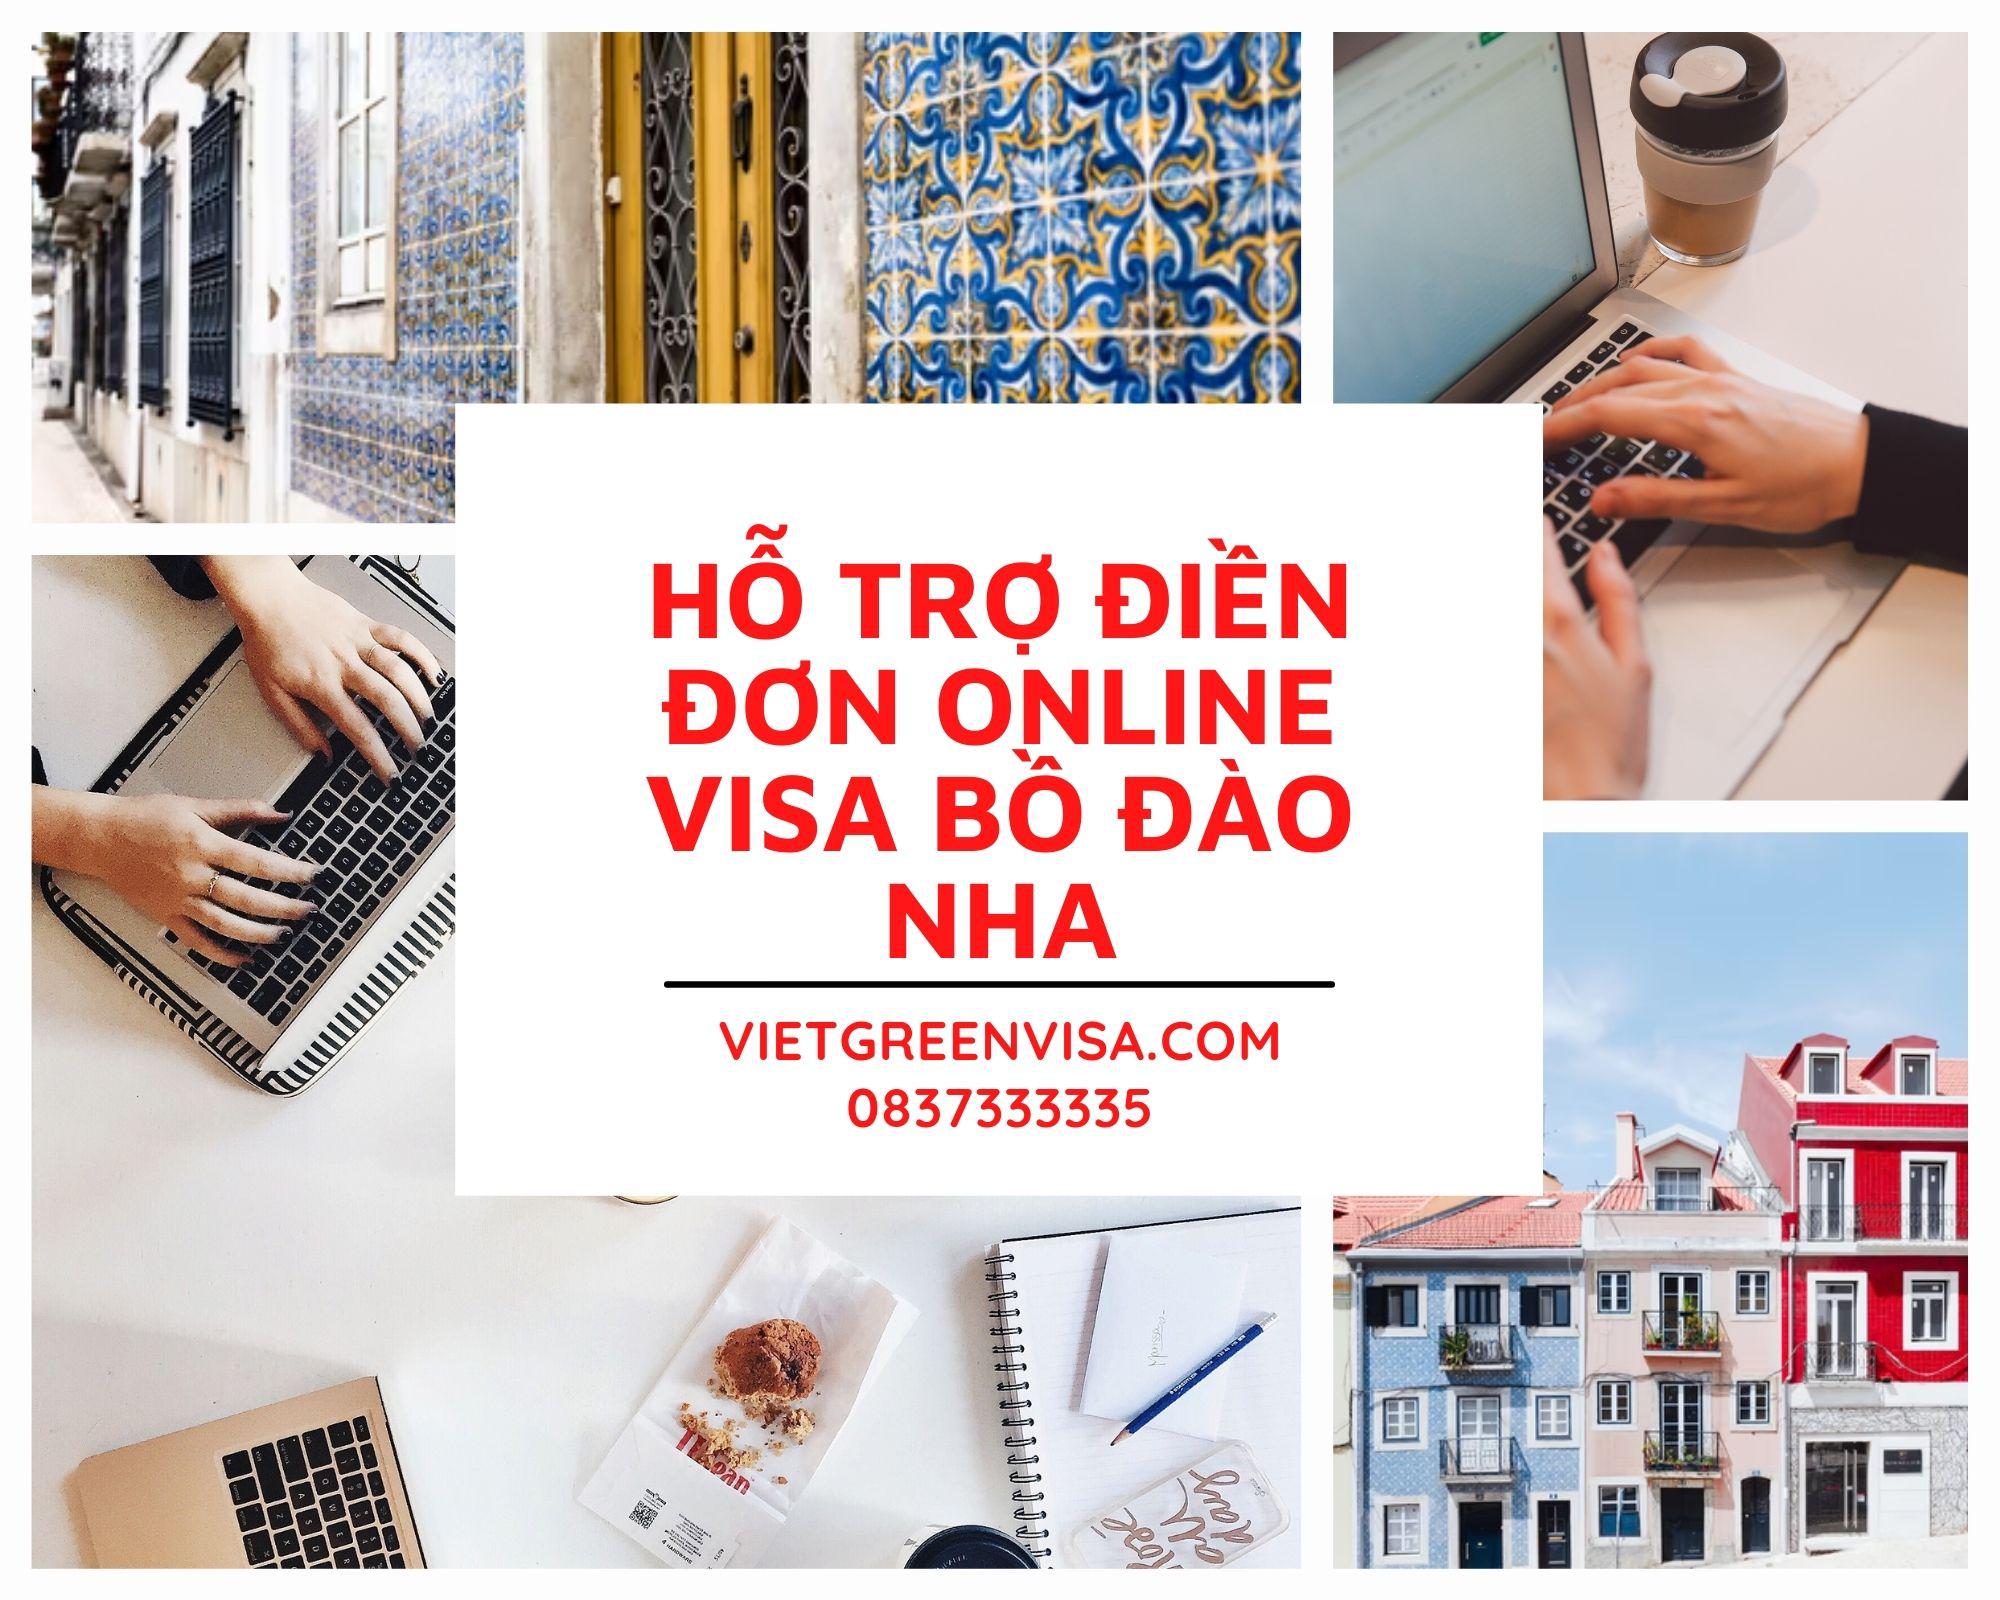 Hỗ trợ điền đơn visa Bồ Đào Nha online nhanh